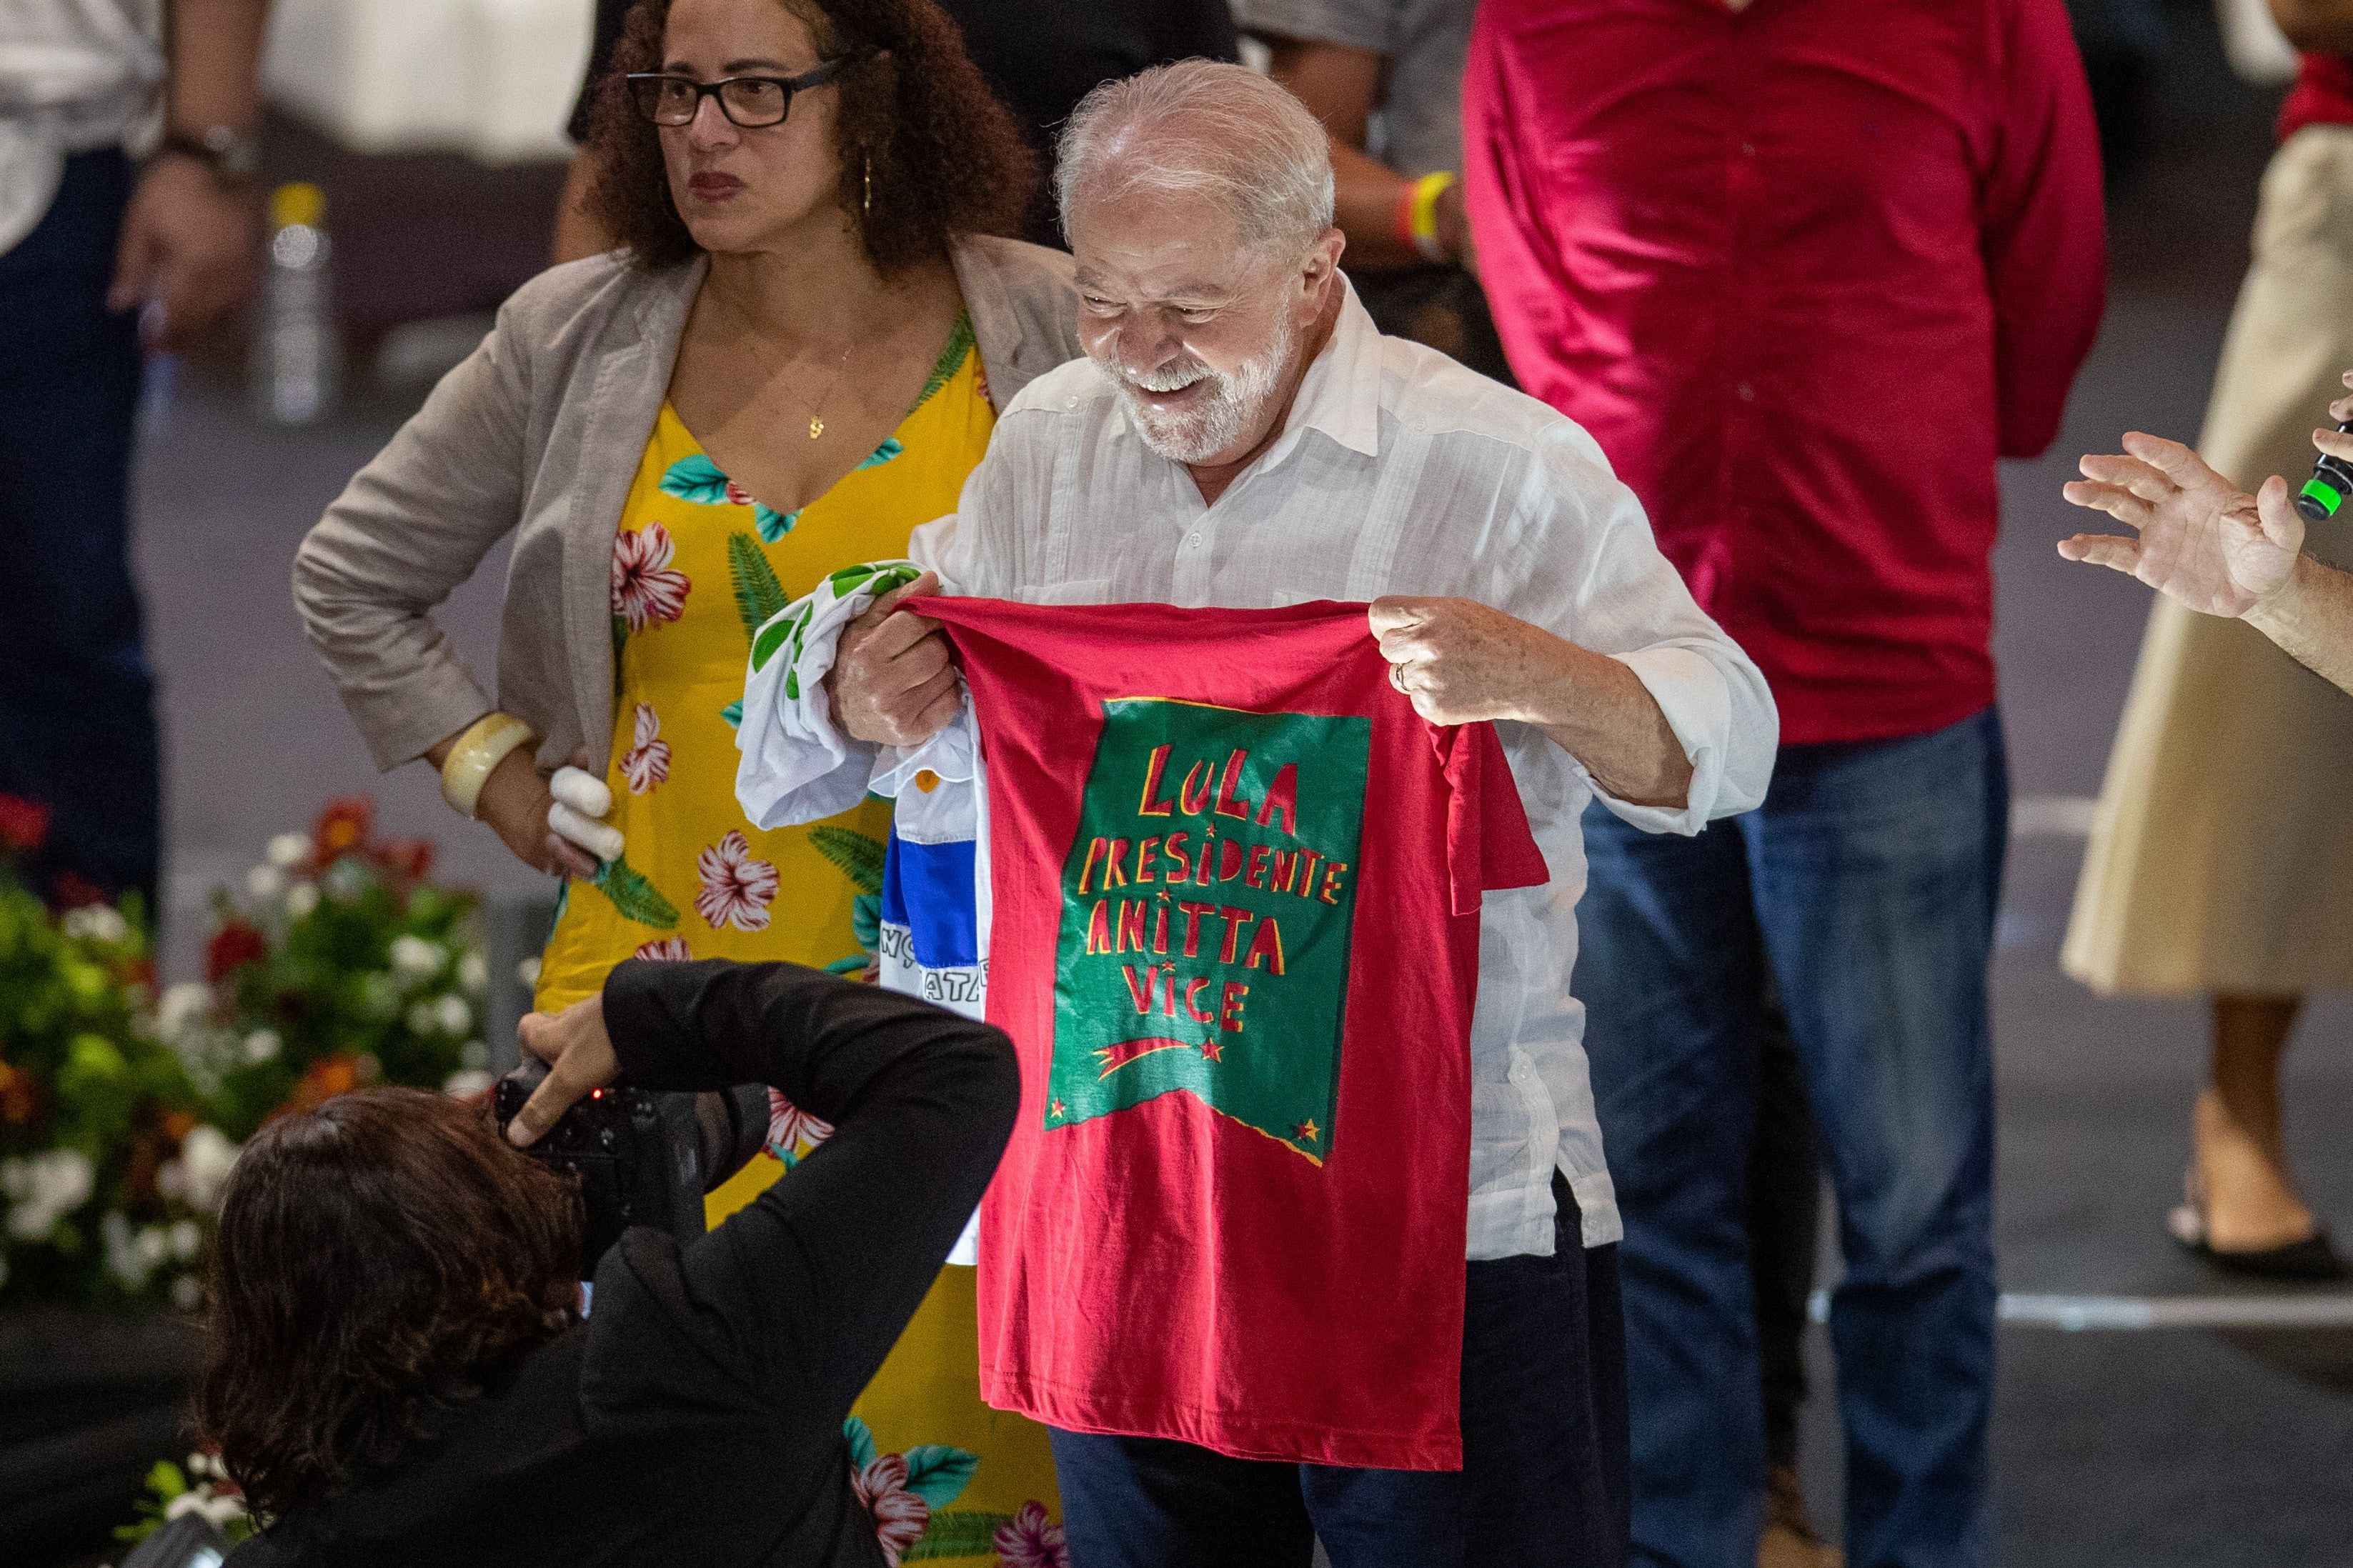 El candidato presidencial Luiz Inácio Lula da Silva participa en un acto de campaña en el centro de convenciones de Recife (Brasil). En una imagen de archivo. EFE/ Carlos Ezequiel Vannoni 